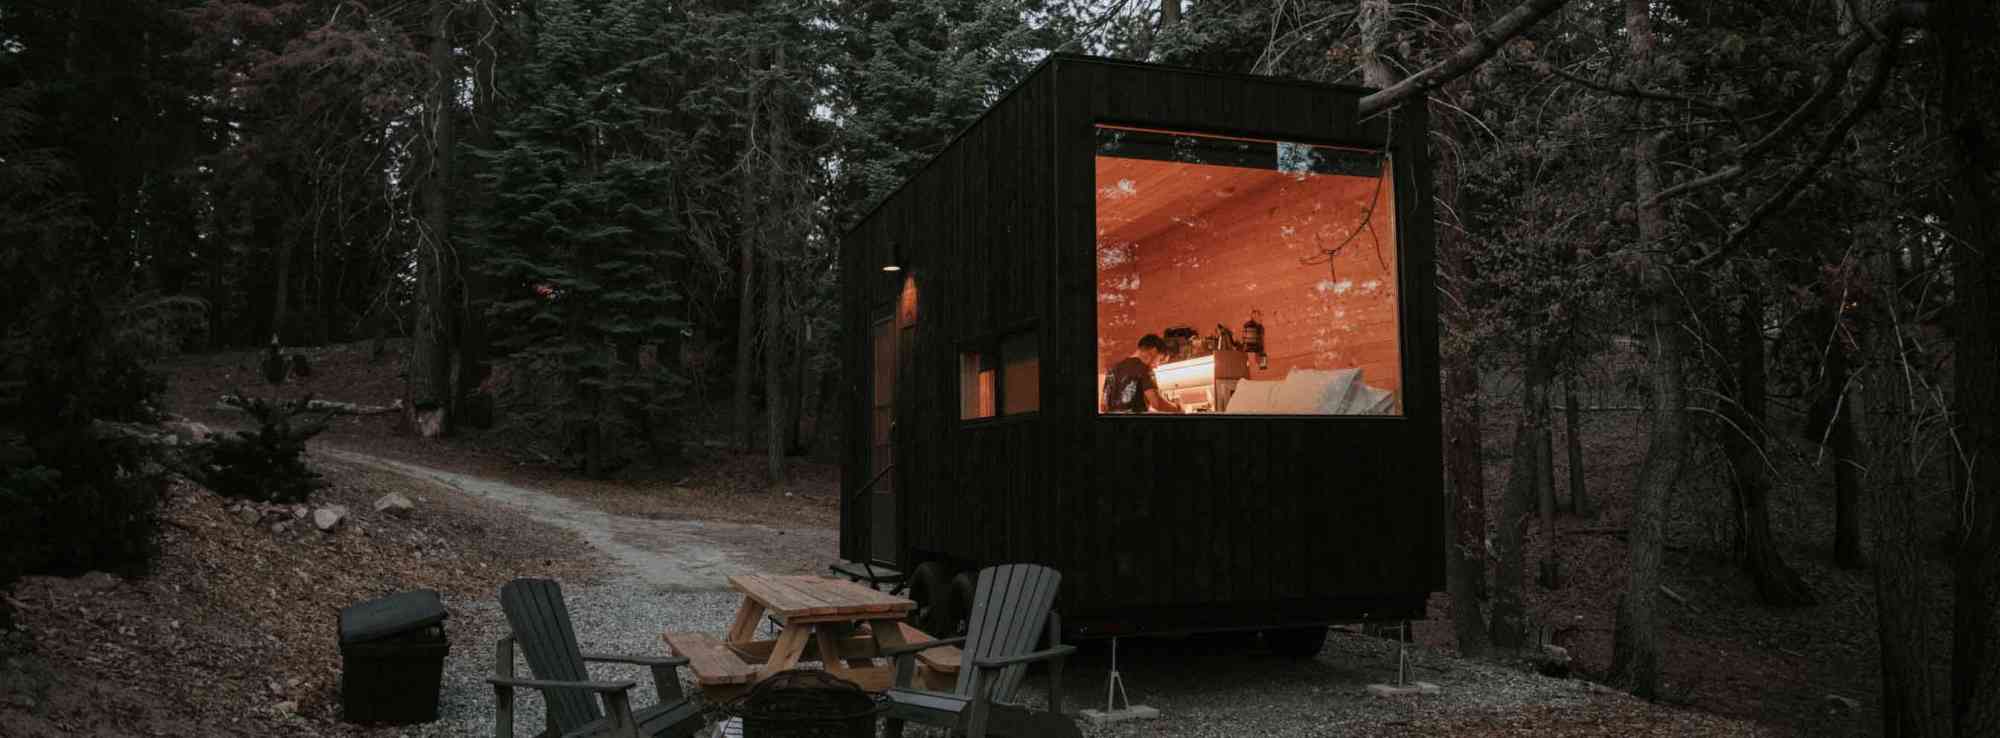 An Architect-Designed Modern Cabin in Catskill, NY – ESCAPE BROOKLYN